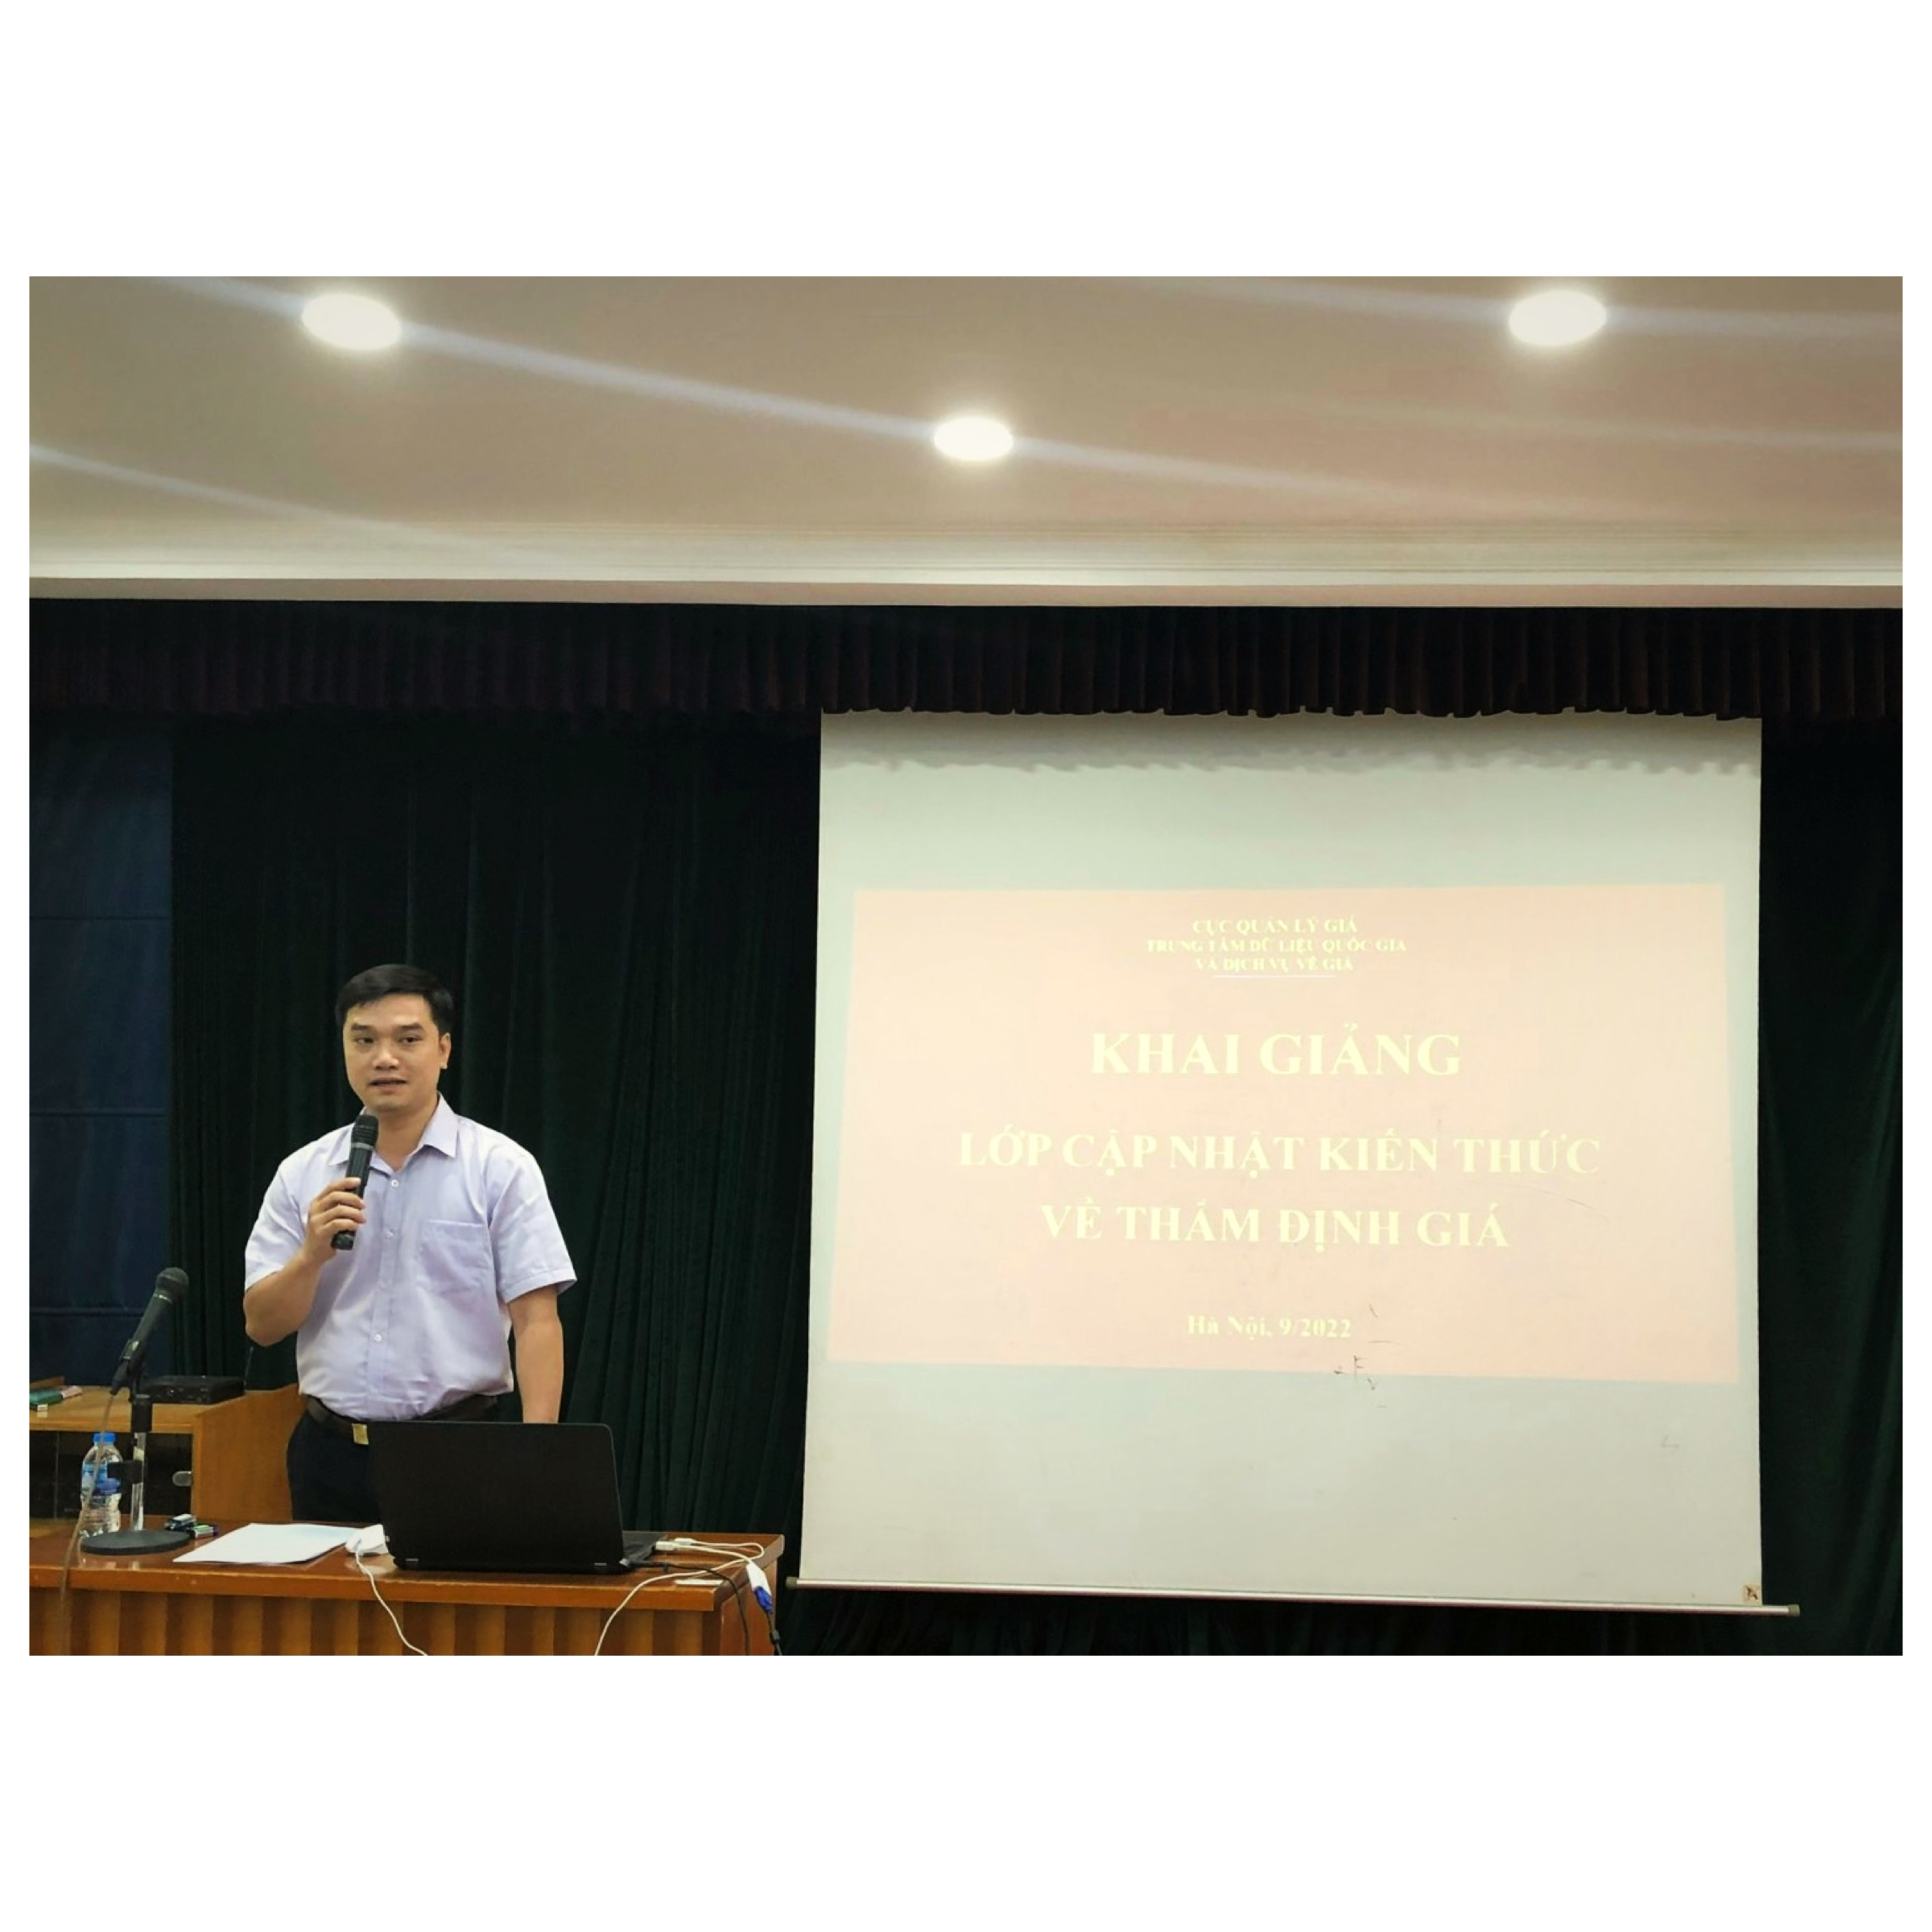 KHAI GIẢNG: Lớp cập nhật kiến thức về thẩm định giá tại Hà Nội